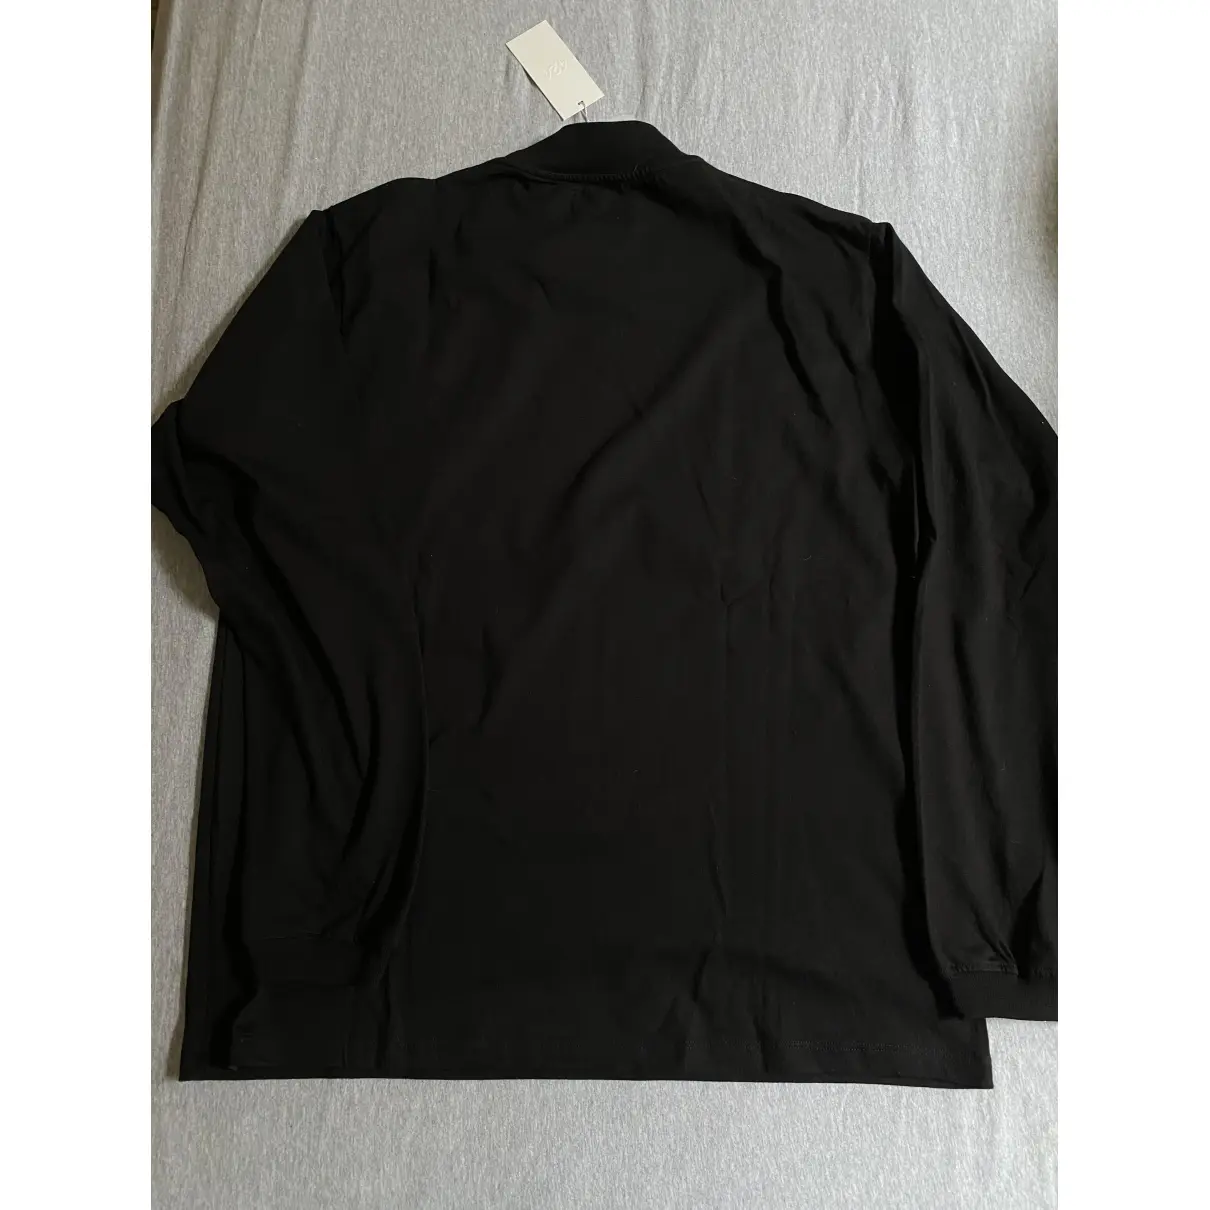 Buy 424 Black Cotton Knitwear & Sweatshirt online